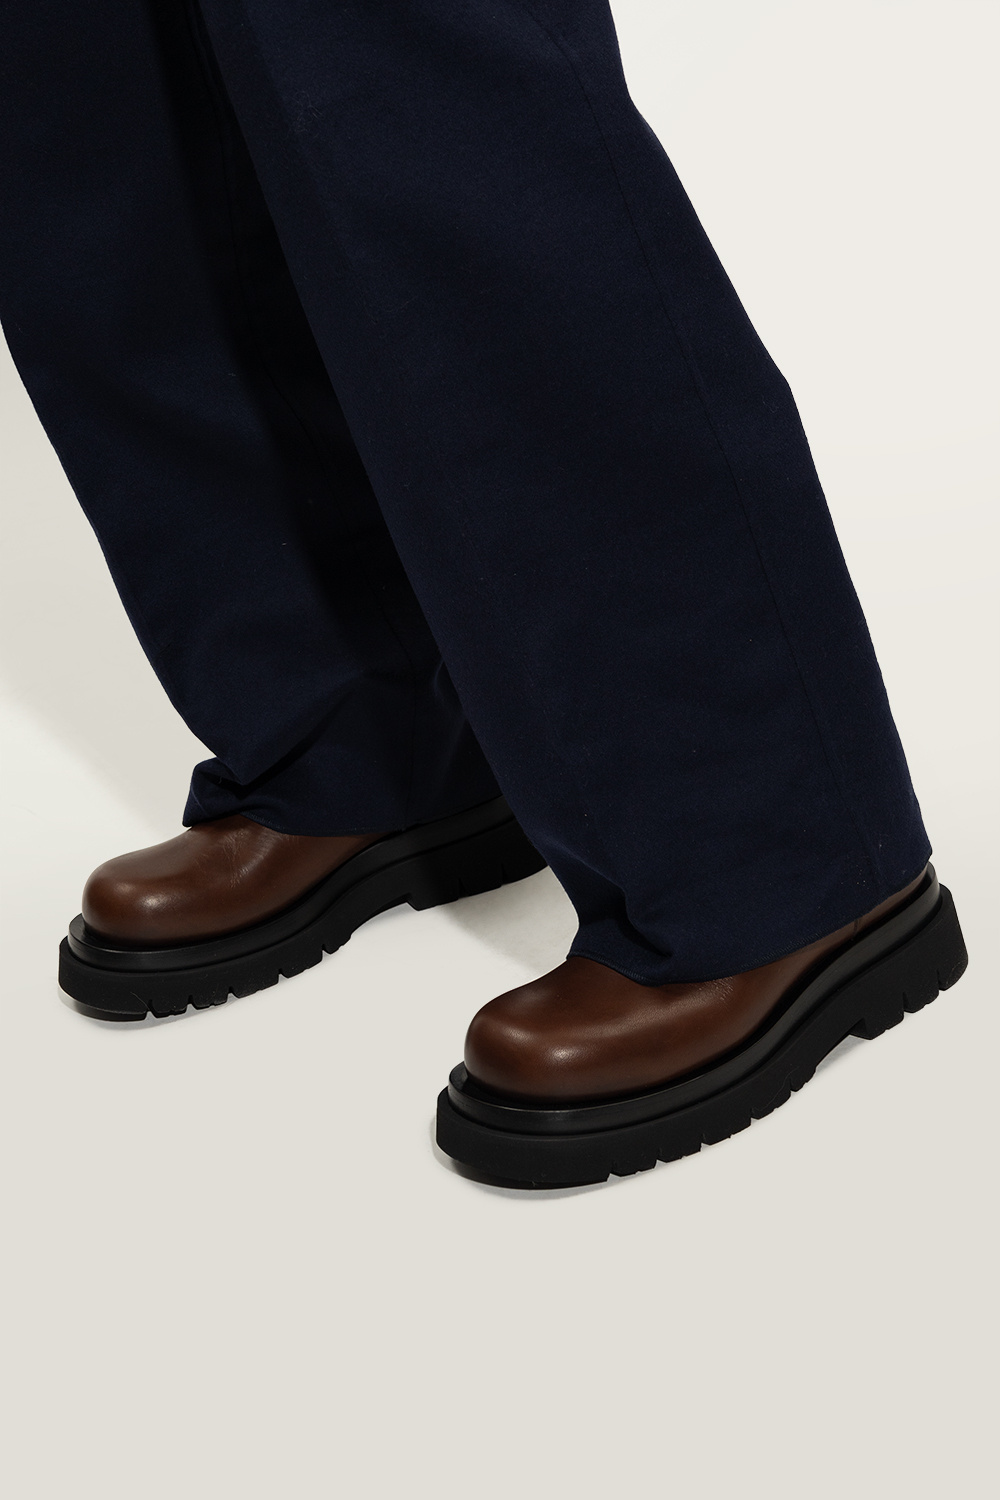 bottega TKIE Veneta ‘Lug’ ankle boots